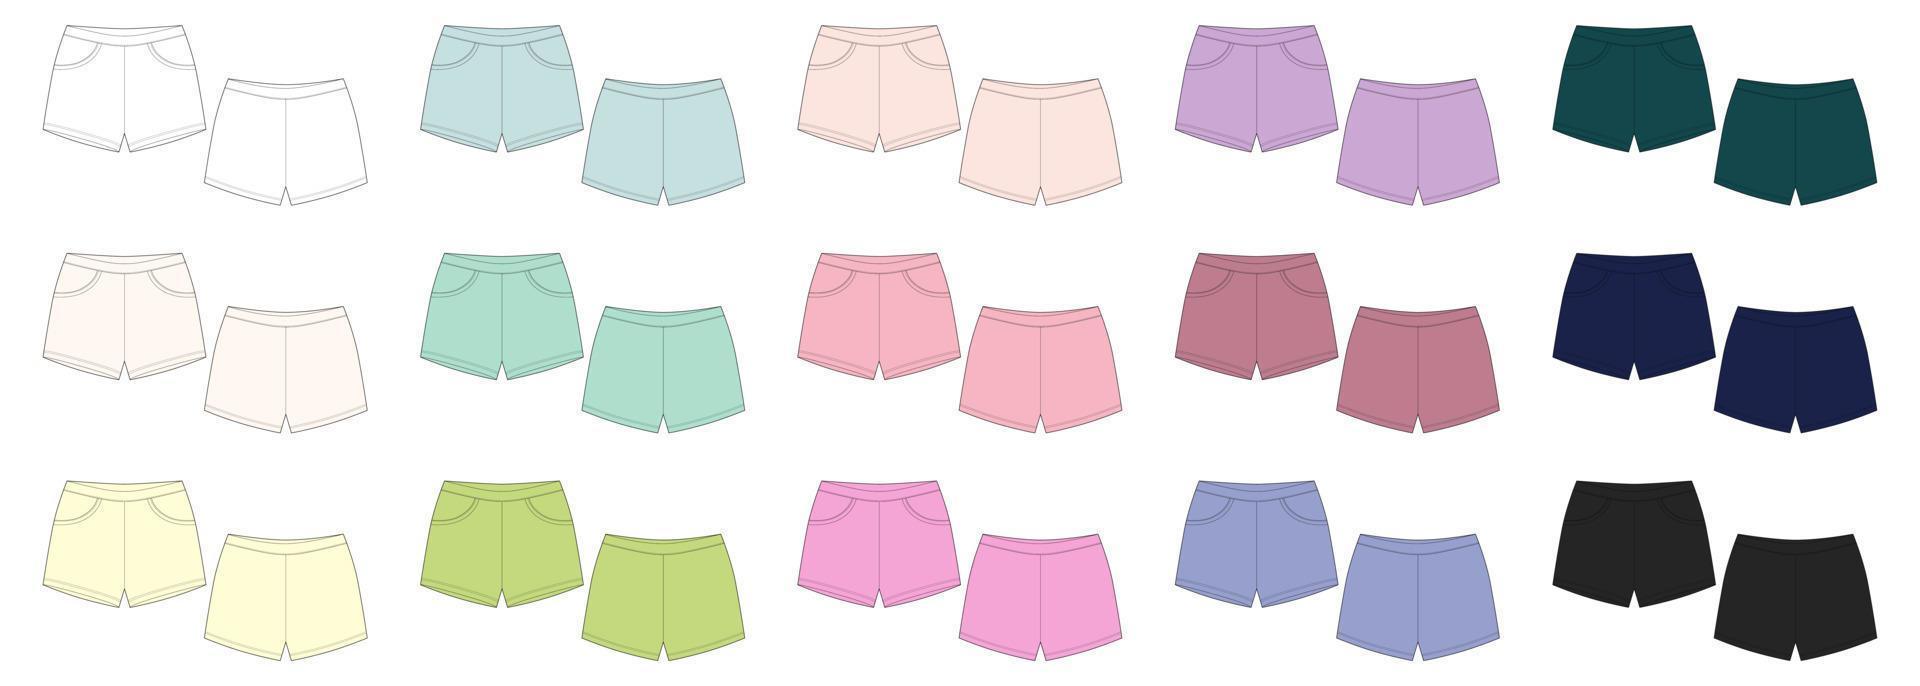 set technische schets shorts broek ontwerpsjabloon. elastische sportshorts collectie. vector